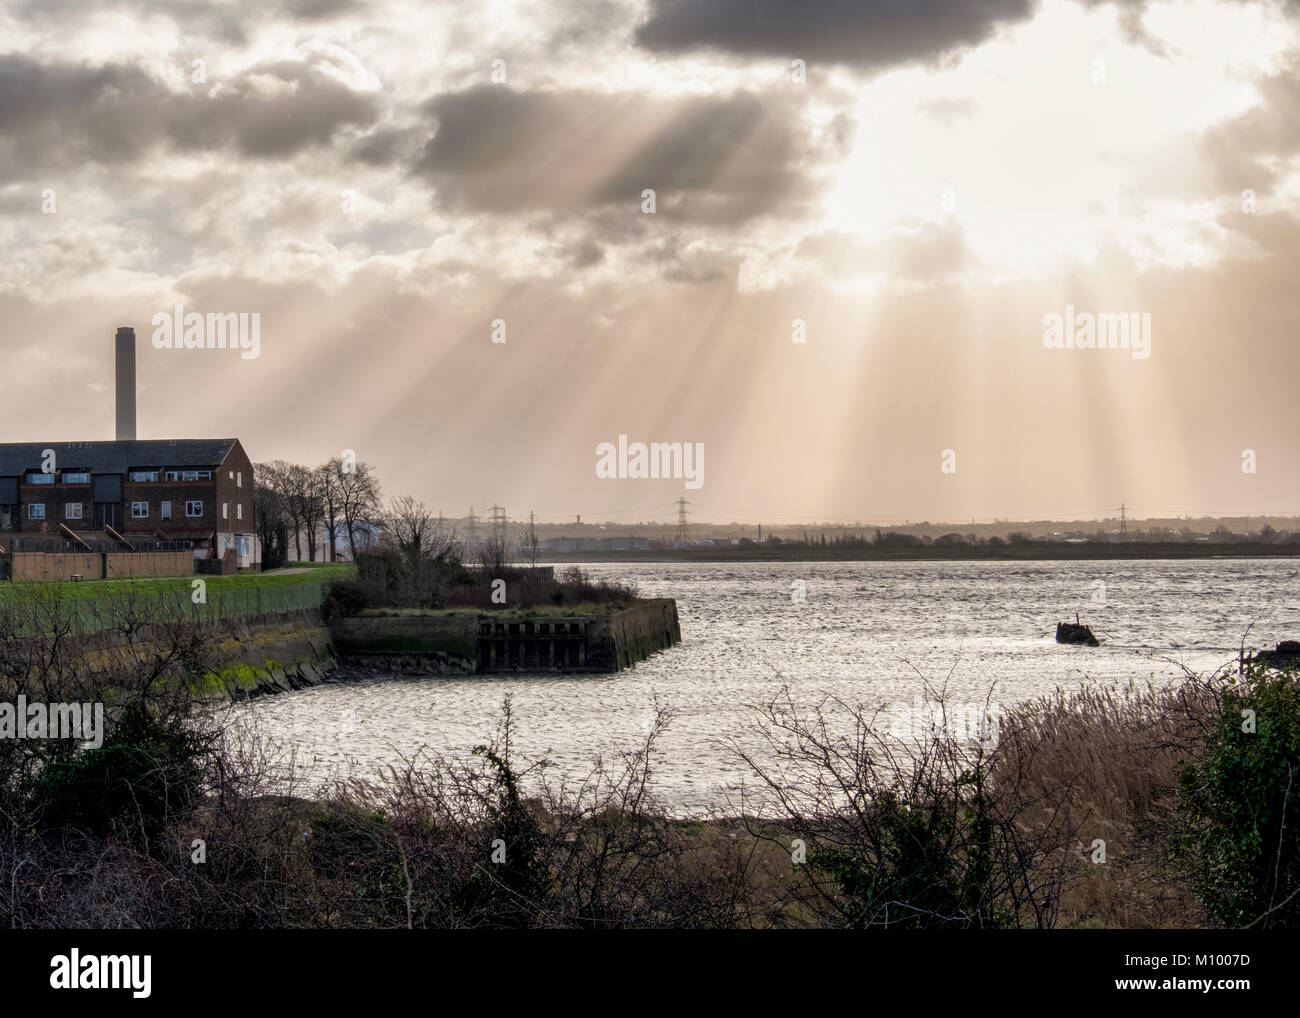 Essex, UK. Blick von Rainham Marshes RSPB Nature Reserve neben Thames Estuary in Purfleet, Themse, Wolken und Sonnenstrahlen Stockfoto